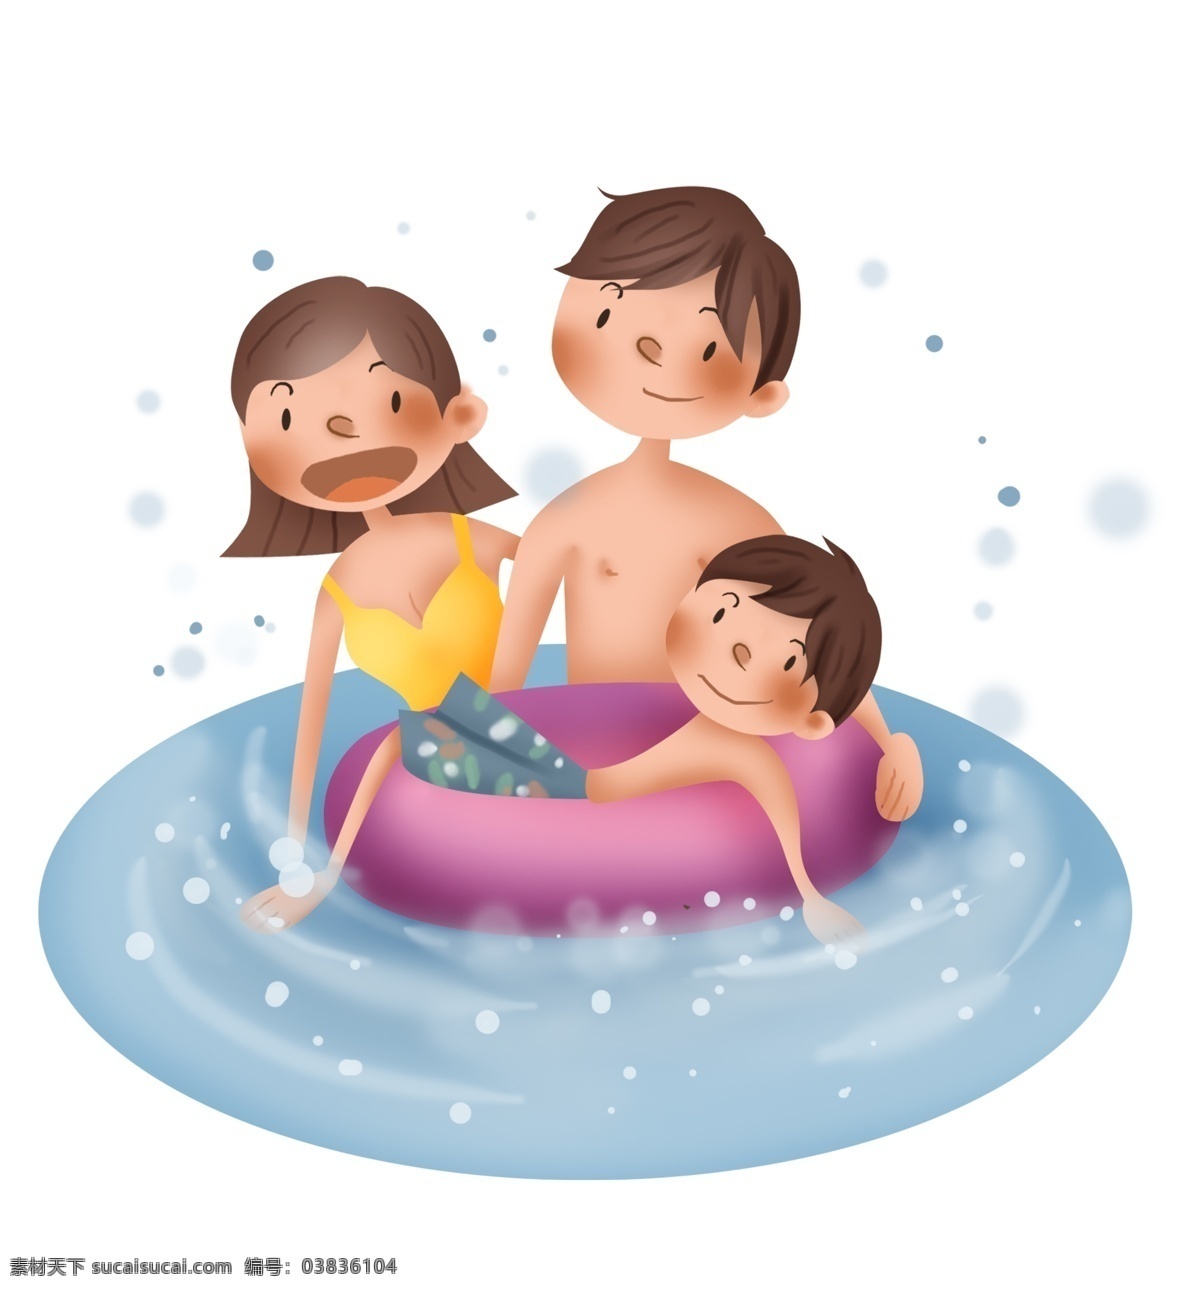 夏季 游泳 避暑 一家人 爸爸 六一儿童节 6.1儿童节 游泳圈 海边游泳 国际儿童节 游玩的一家人 妈妈